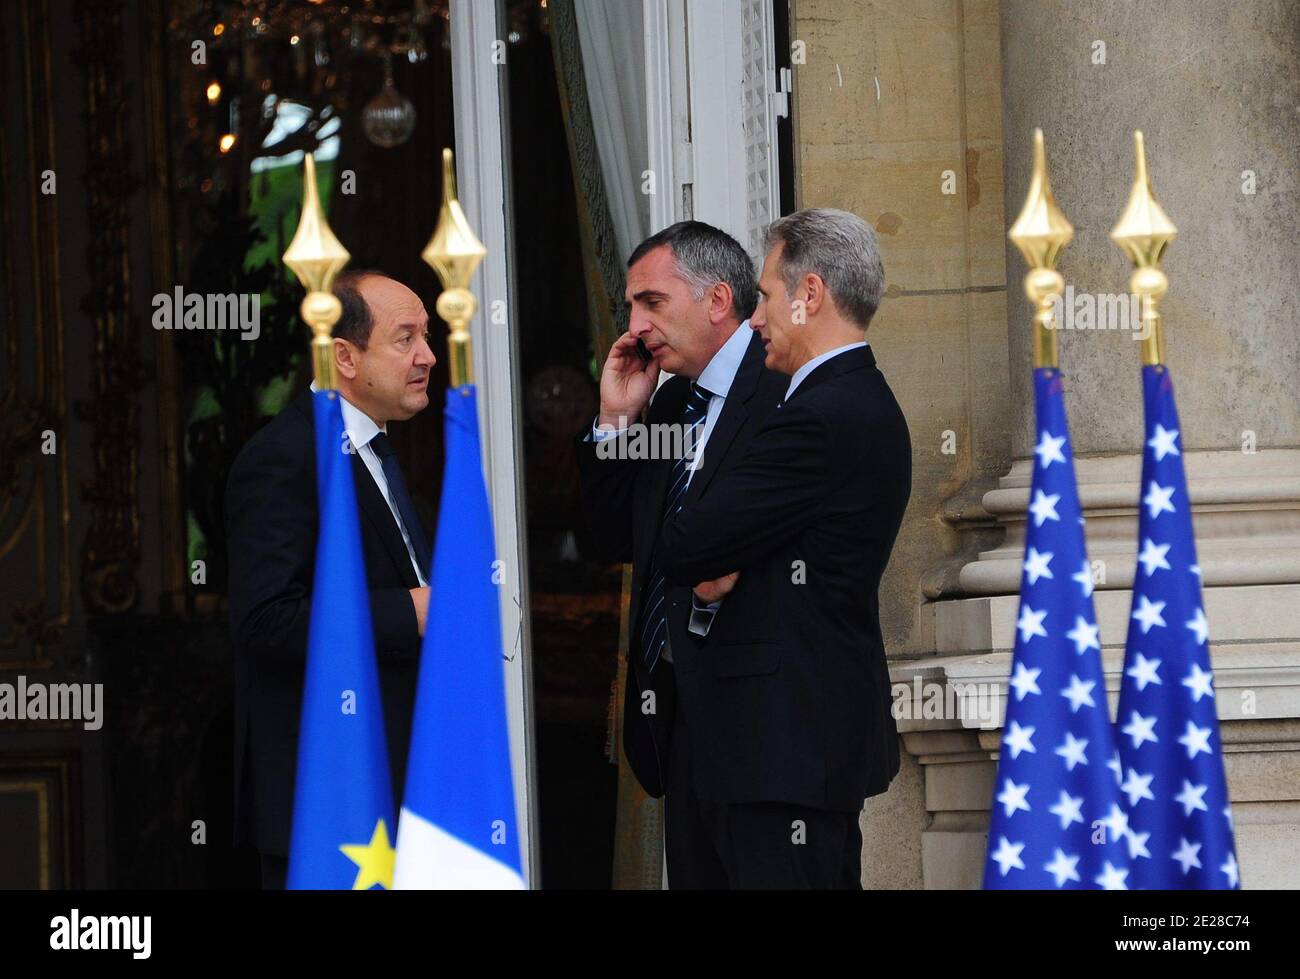 Bernard Squarcini und Michel Besnard sind während der Feier des 10. Jahrestages des 11. September in der US-Botschaft in Paris, Frankreich am 9. September 2011 abgebildet. Foto von Mousse/ABACAPRESS.COM Stockfoto